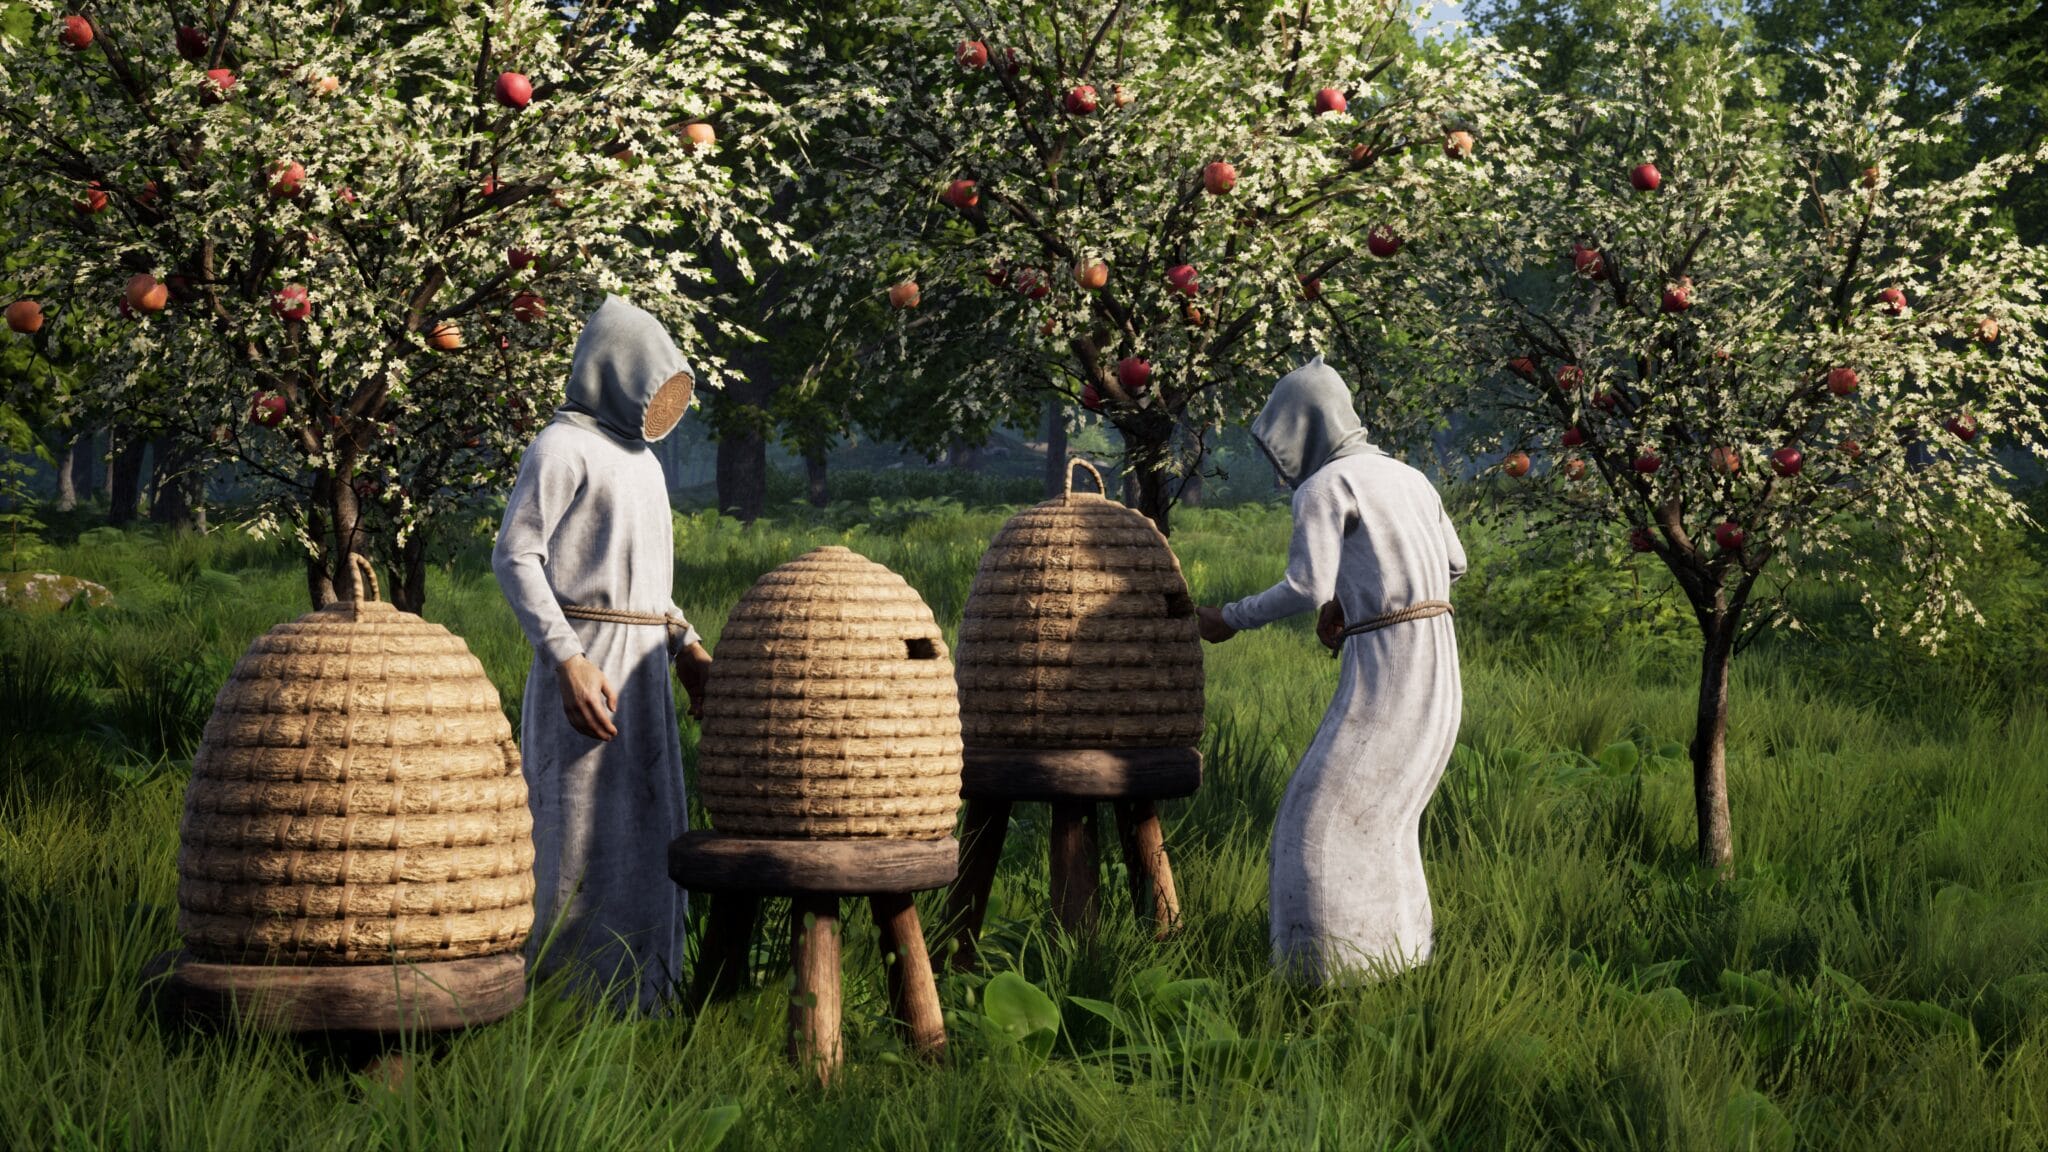 Една от първите новости беше пчеларството - разбира се, само с подходящото оборудване. Дори през Средновековието пчелните ужилвания са били неприятни.